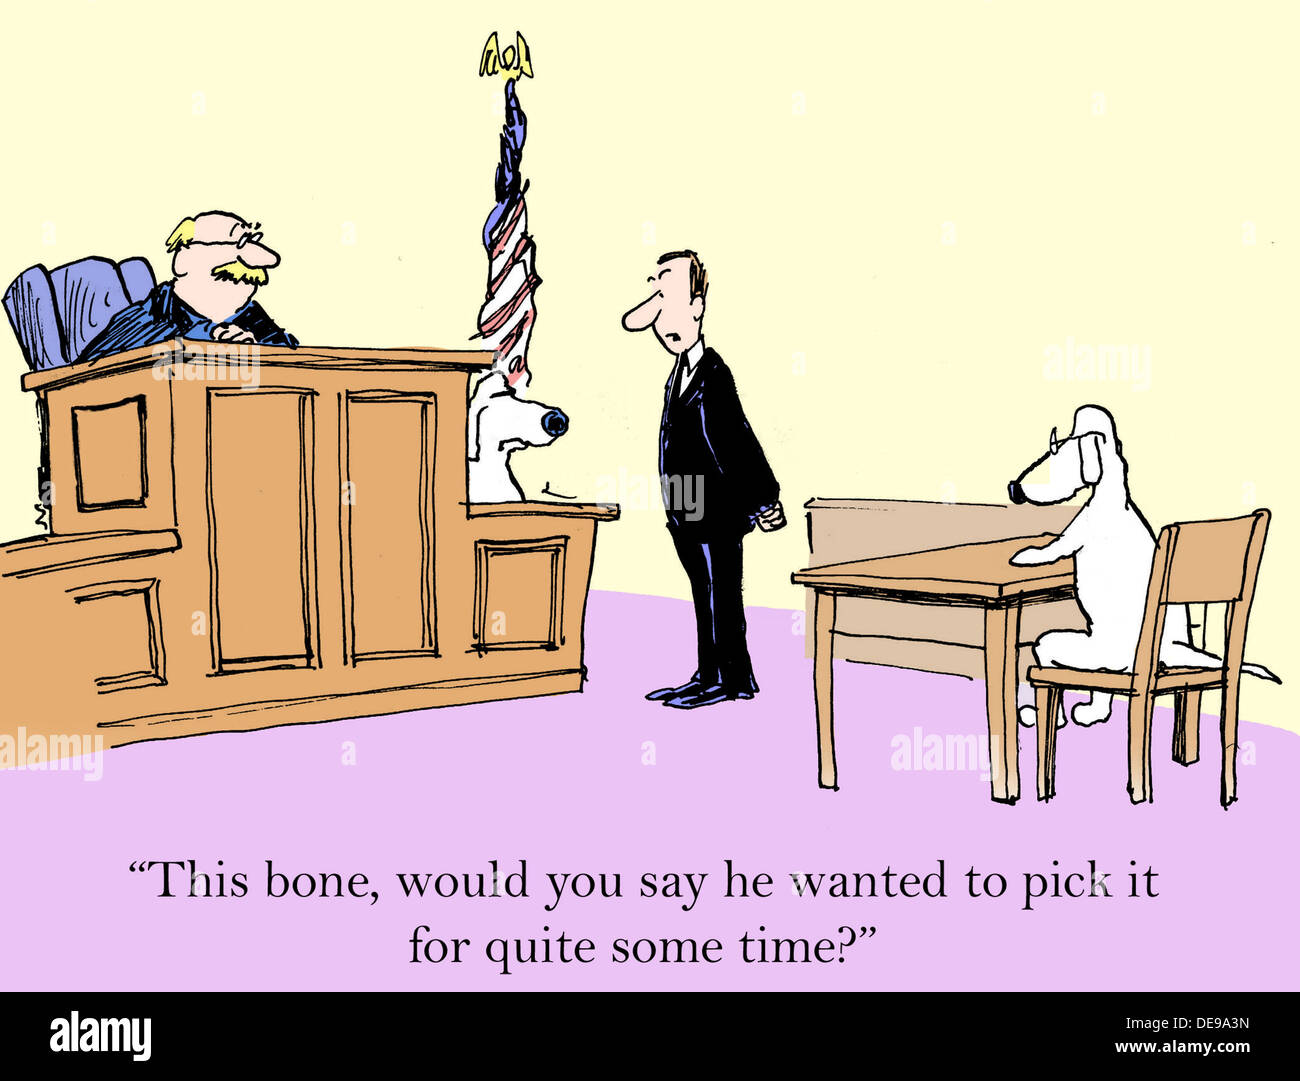 L'avocat est contre-interroger le témoin et dit "cet os, diriez-vous qu'il voulait le prendre pour un certain temps ?". Banque D'Images